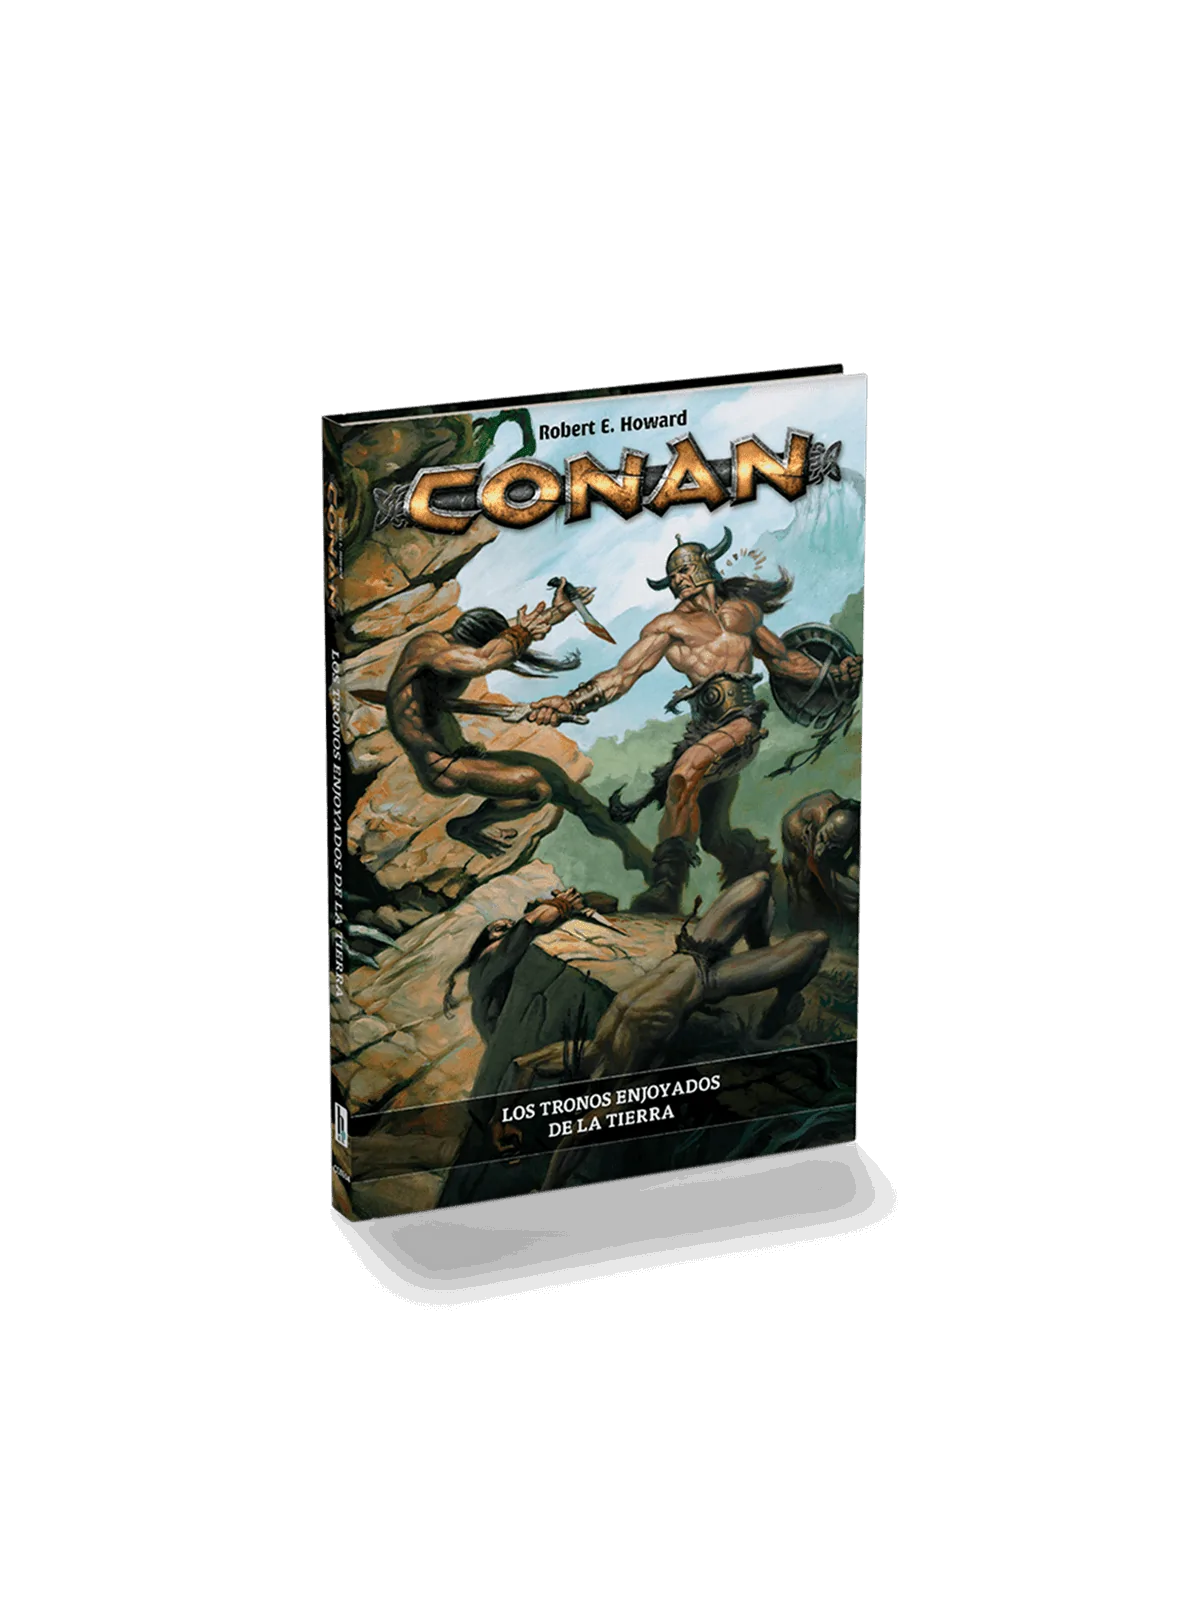 Comprar Conan: Los Tronos Enjoyados de la Tierra barato al mejor preci